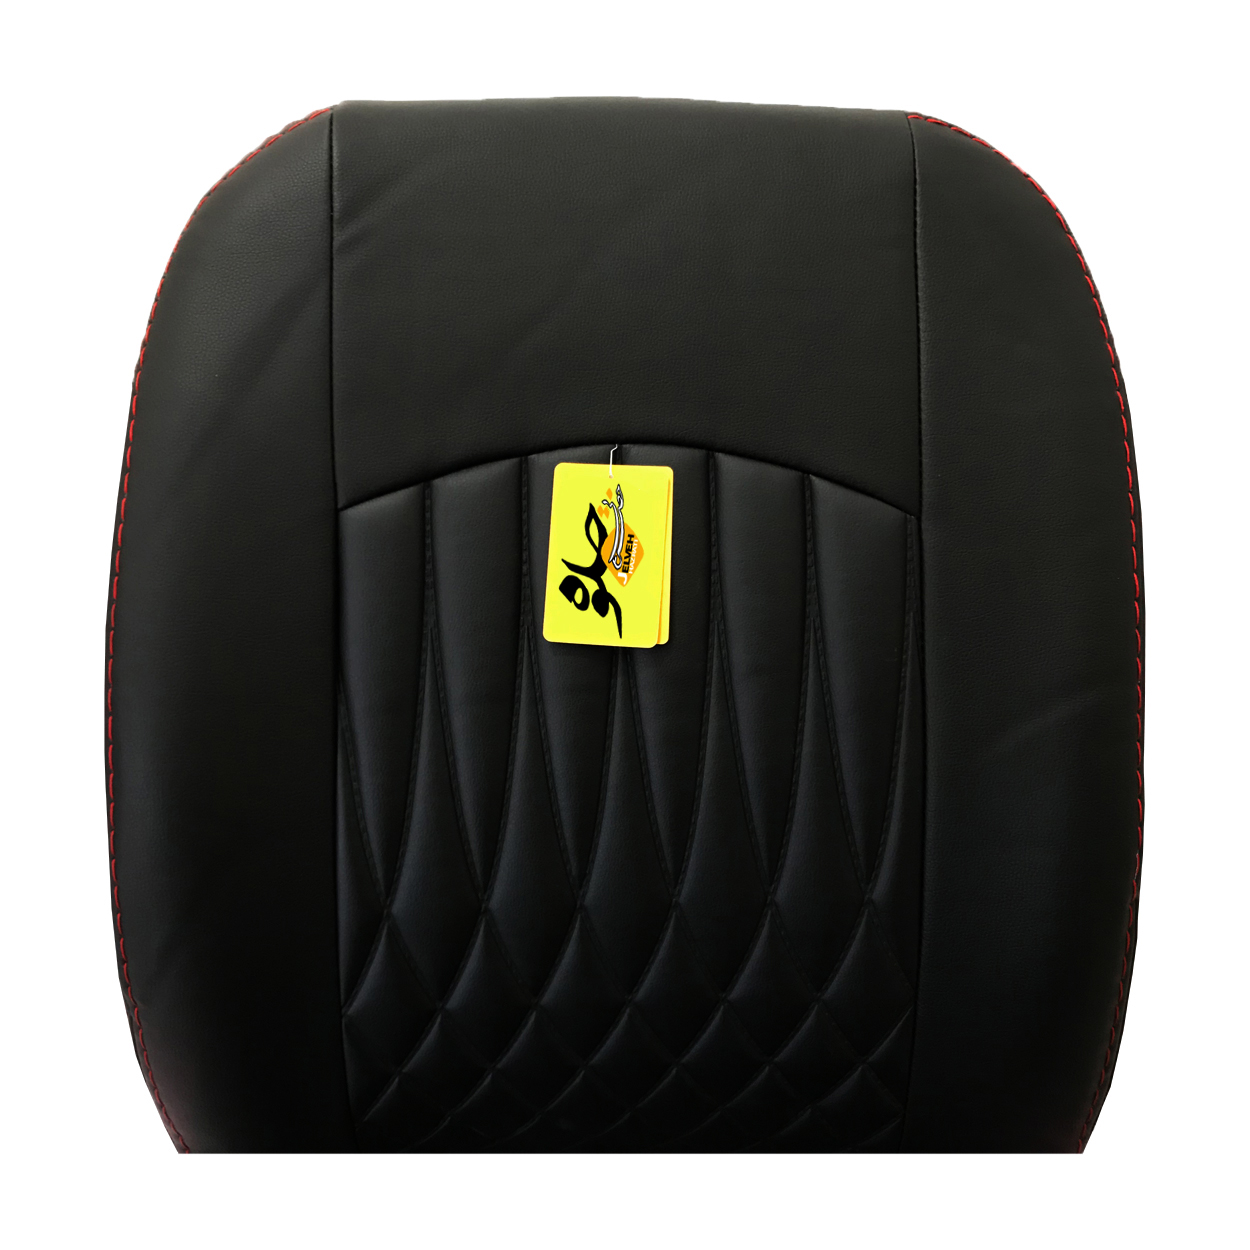 روکش صندلی خودرو جلوه مدل BG12 مناسب برای سراتو سایپا